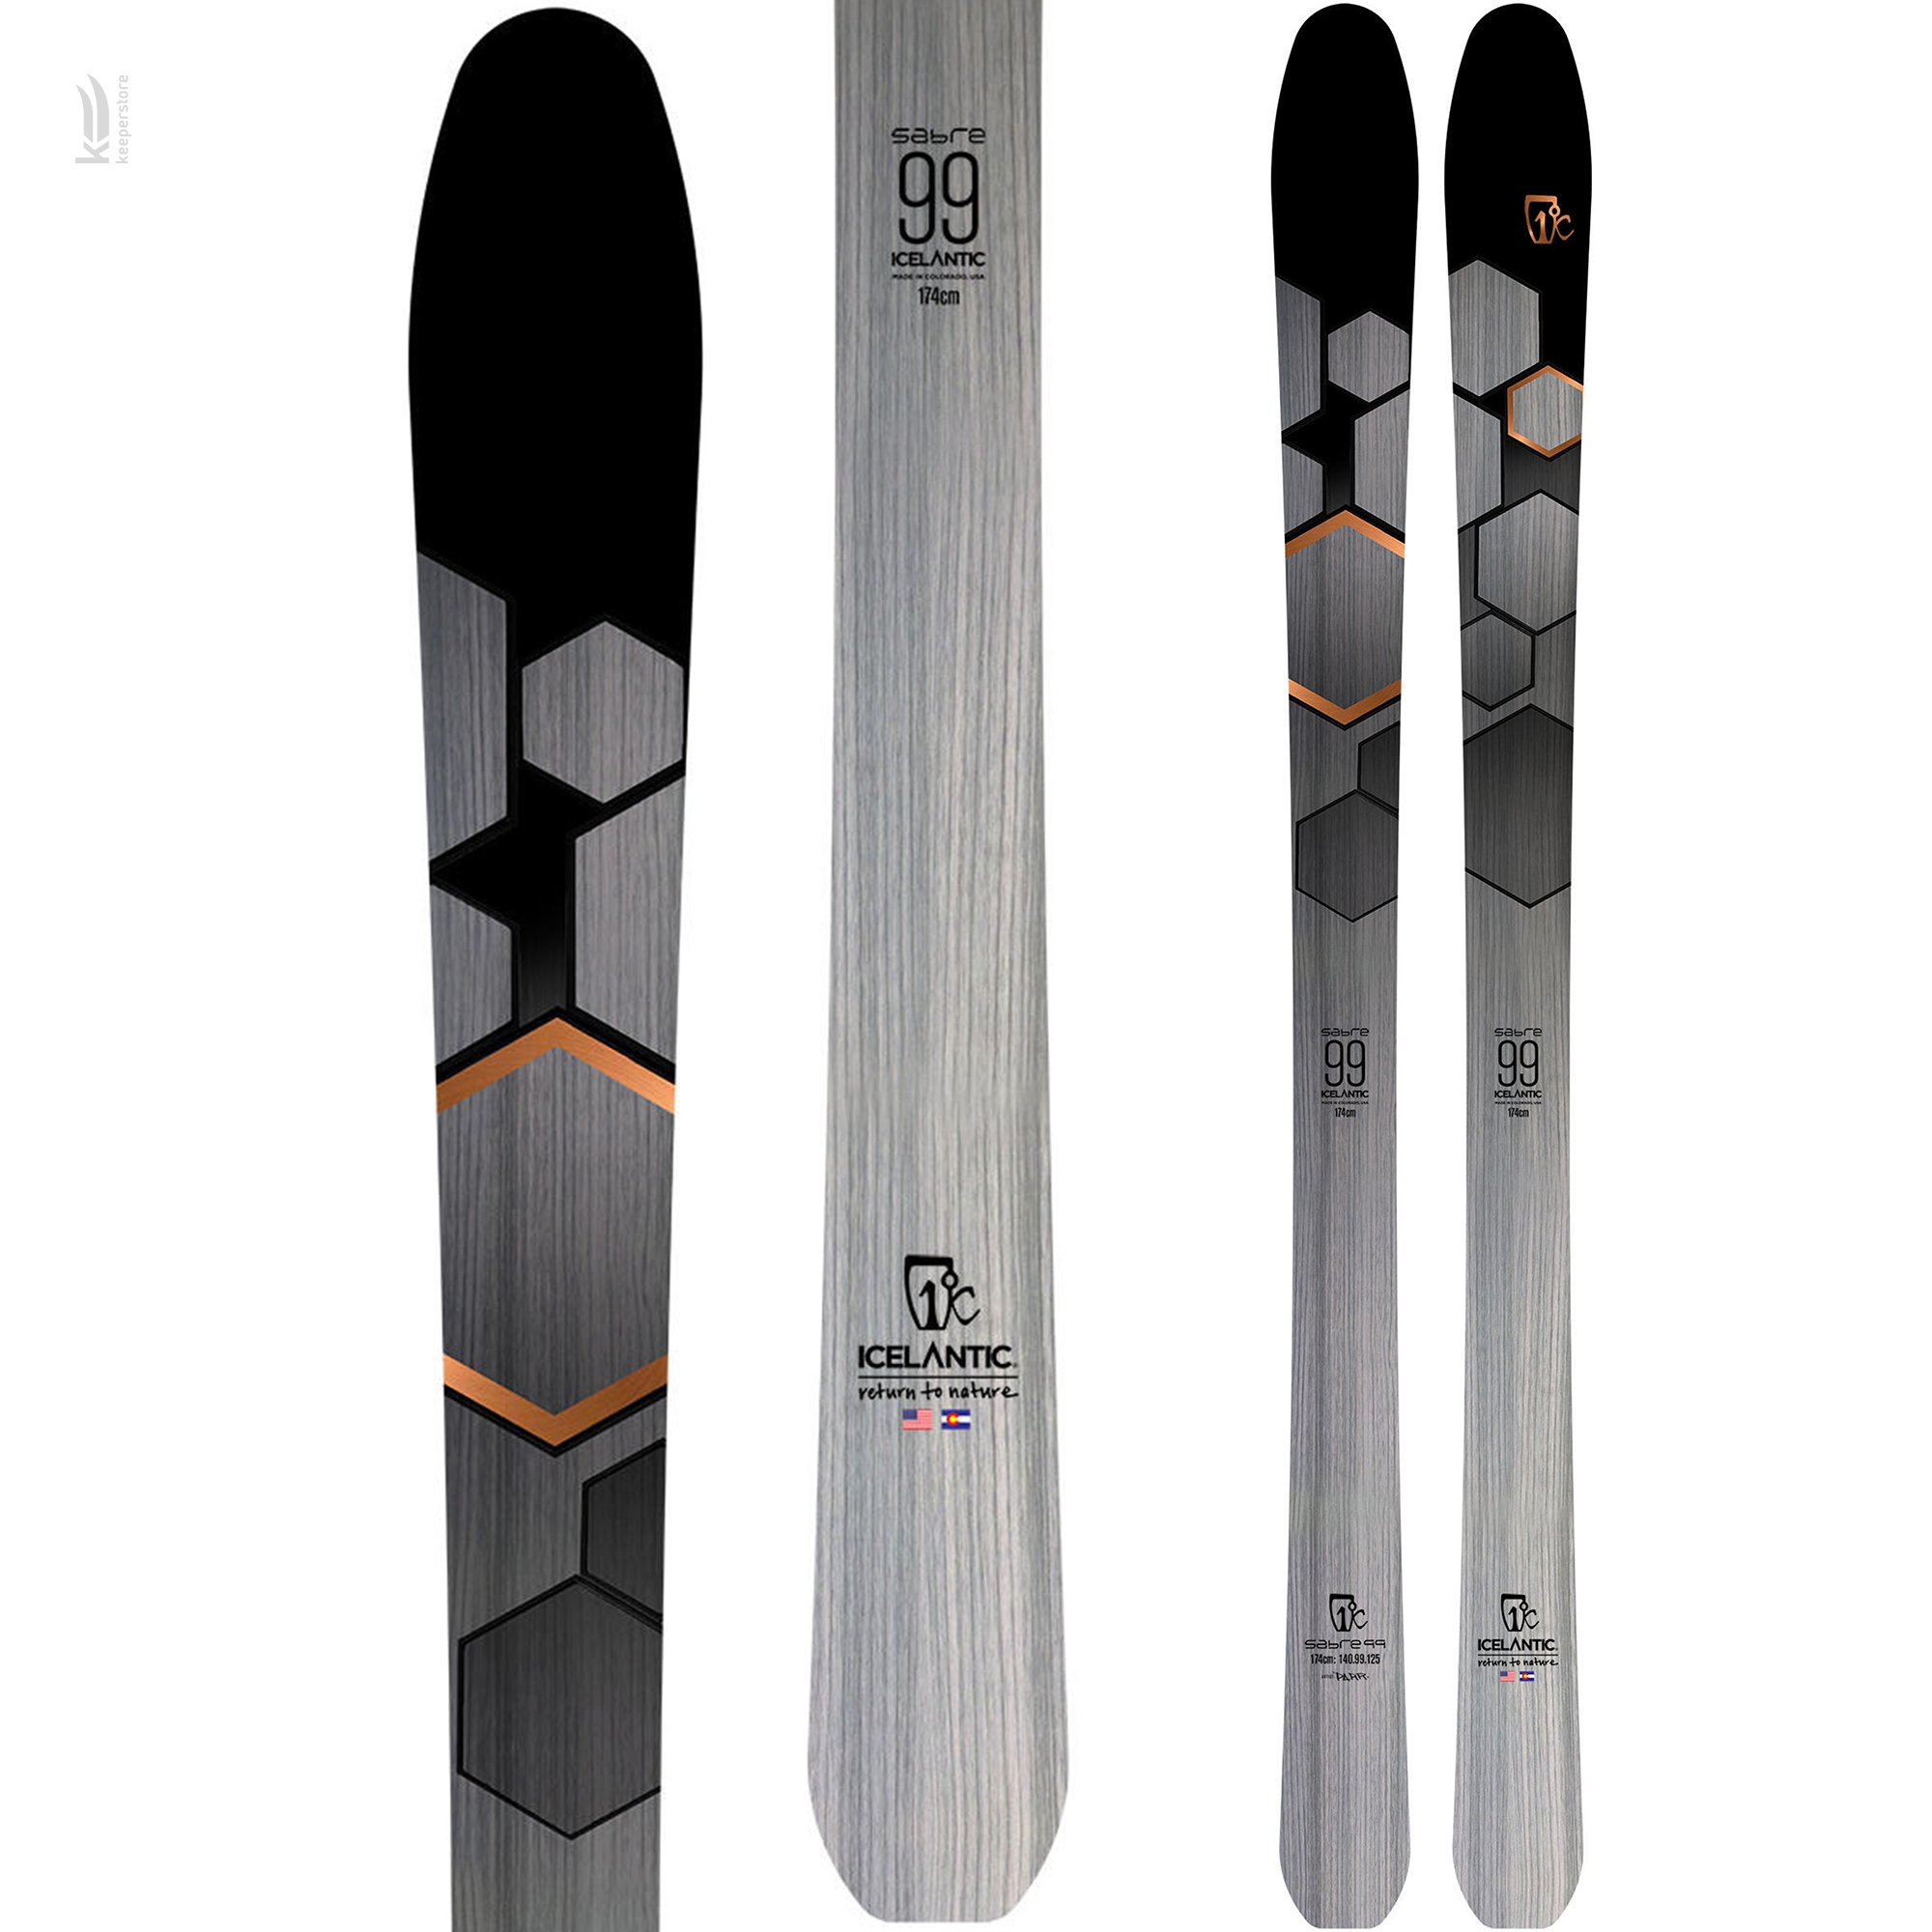 Лыжи для карвинга Icelantic Sabre 99 2019/2020 174cm